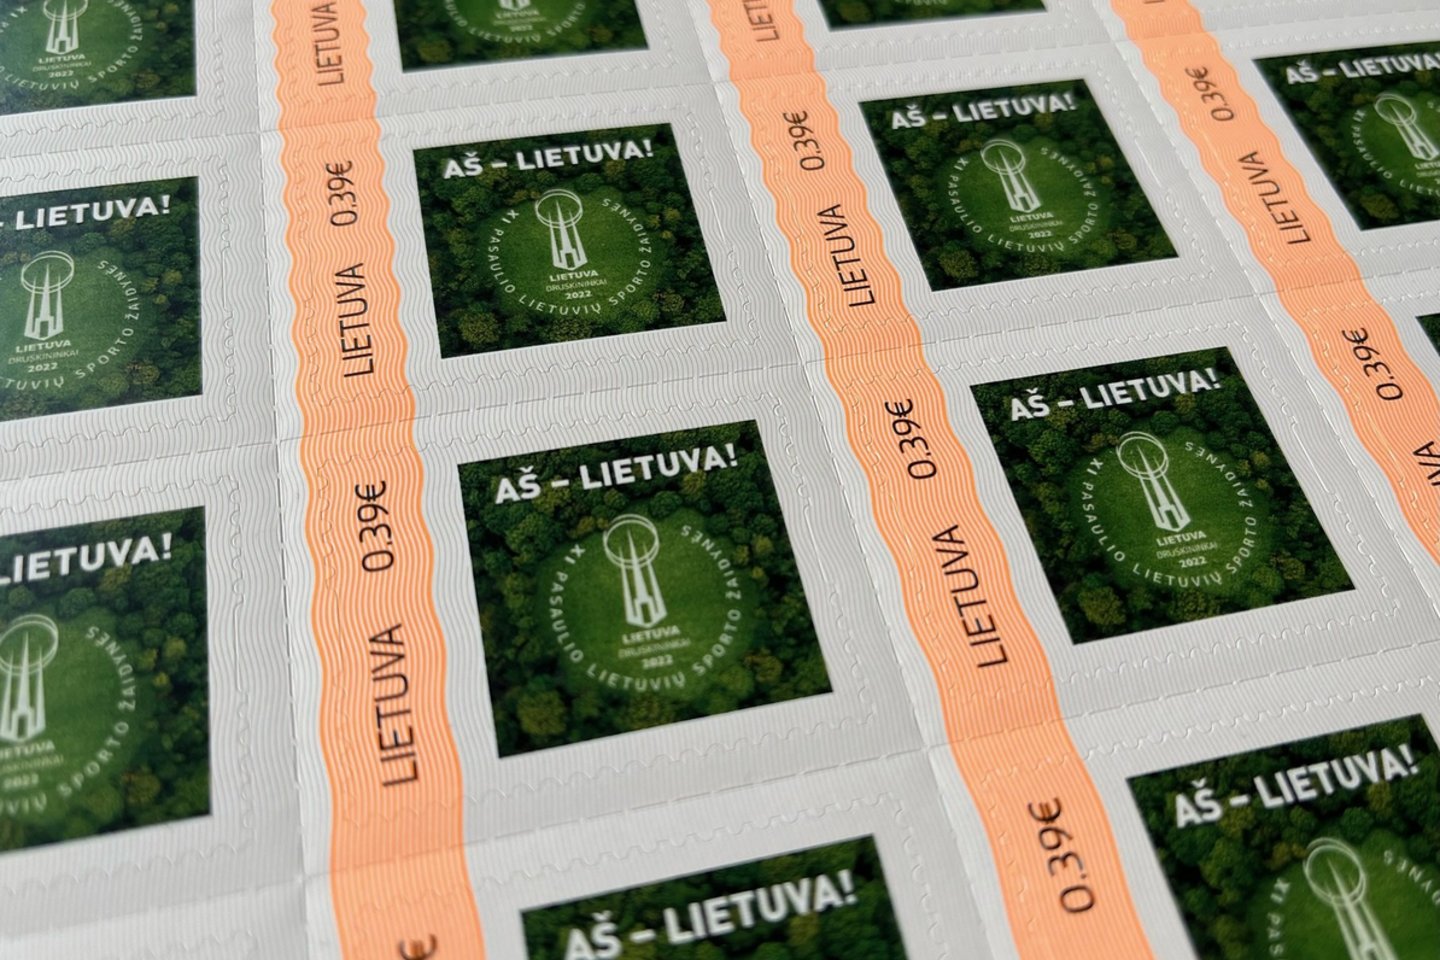  Pasaulio lietuvių sporto žaidynėms išleistas pašto ženklas<br> Organizatorių nuotr.